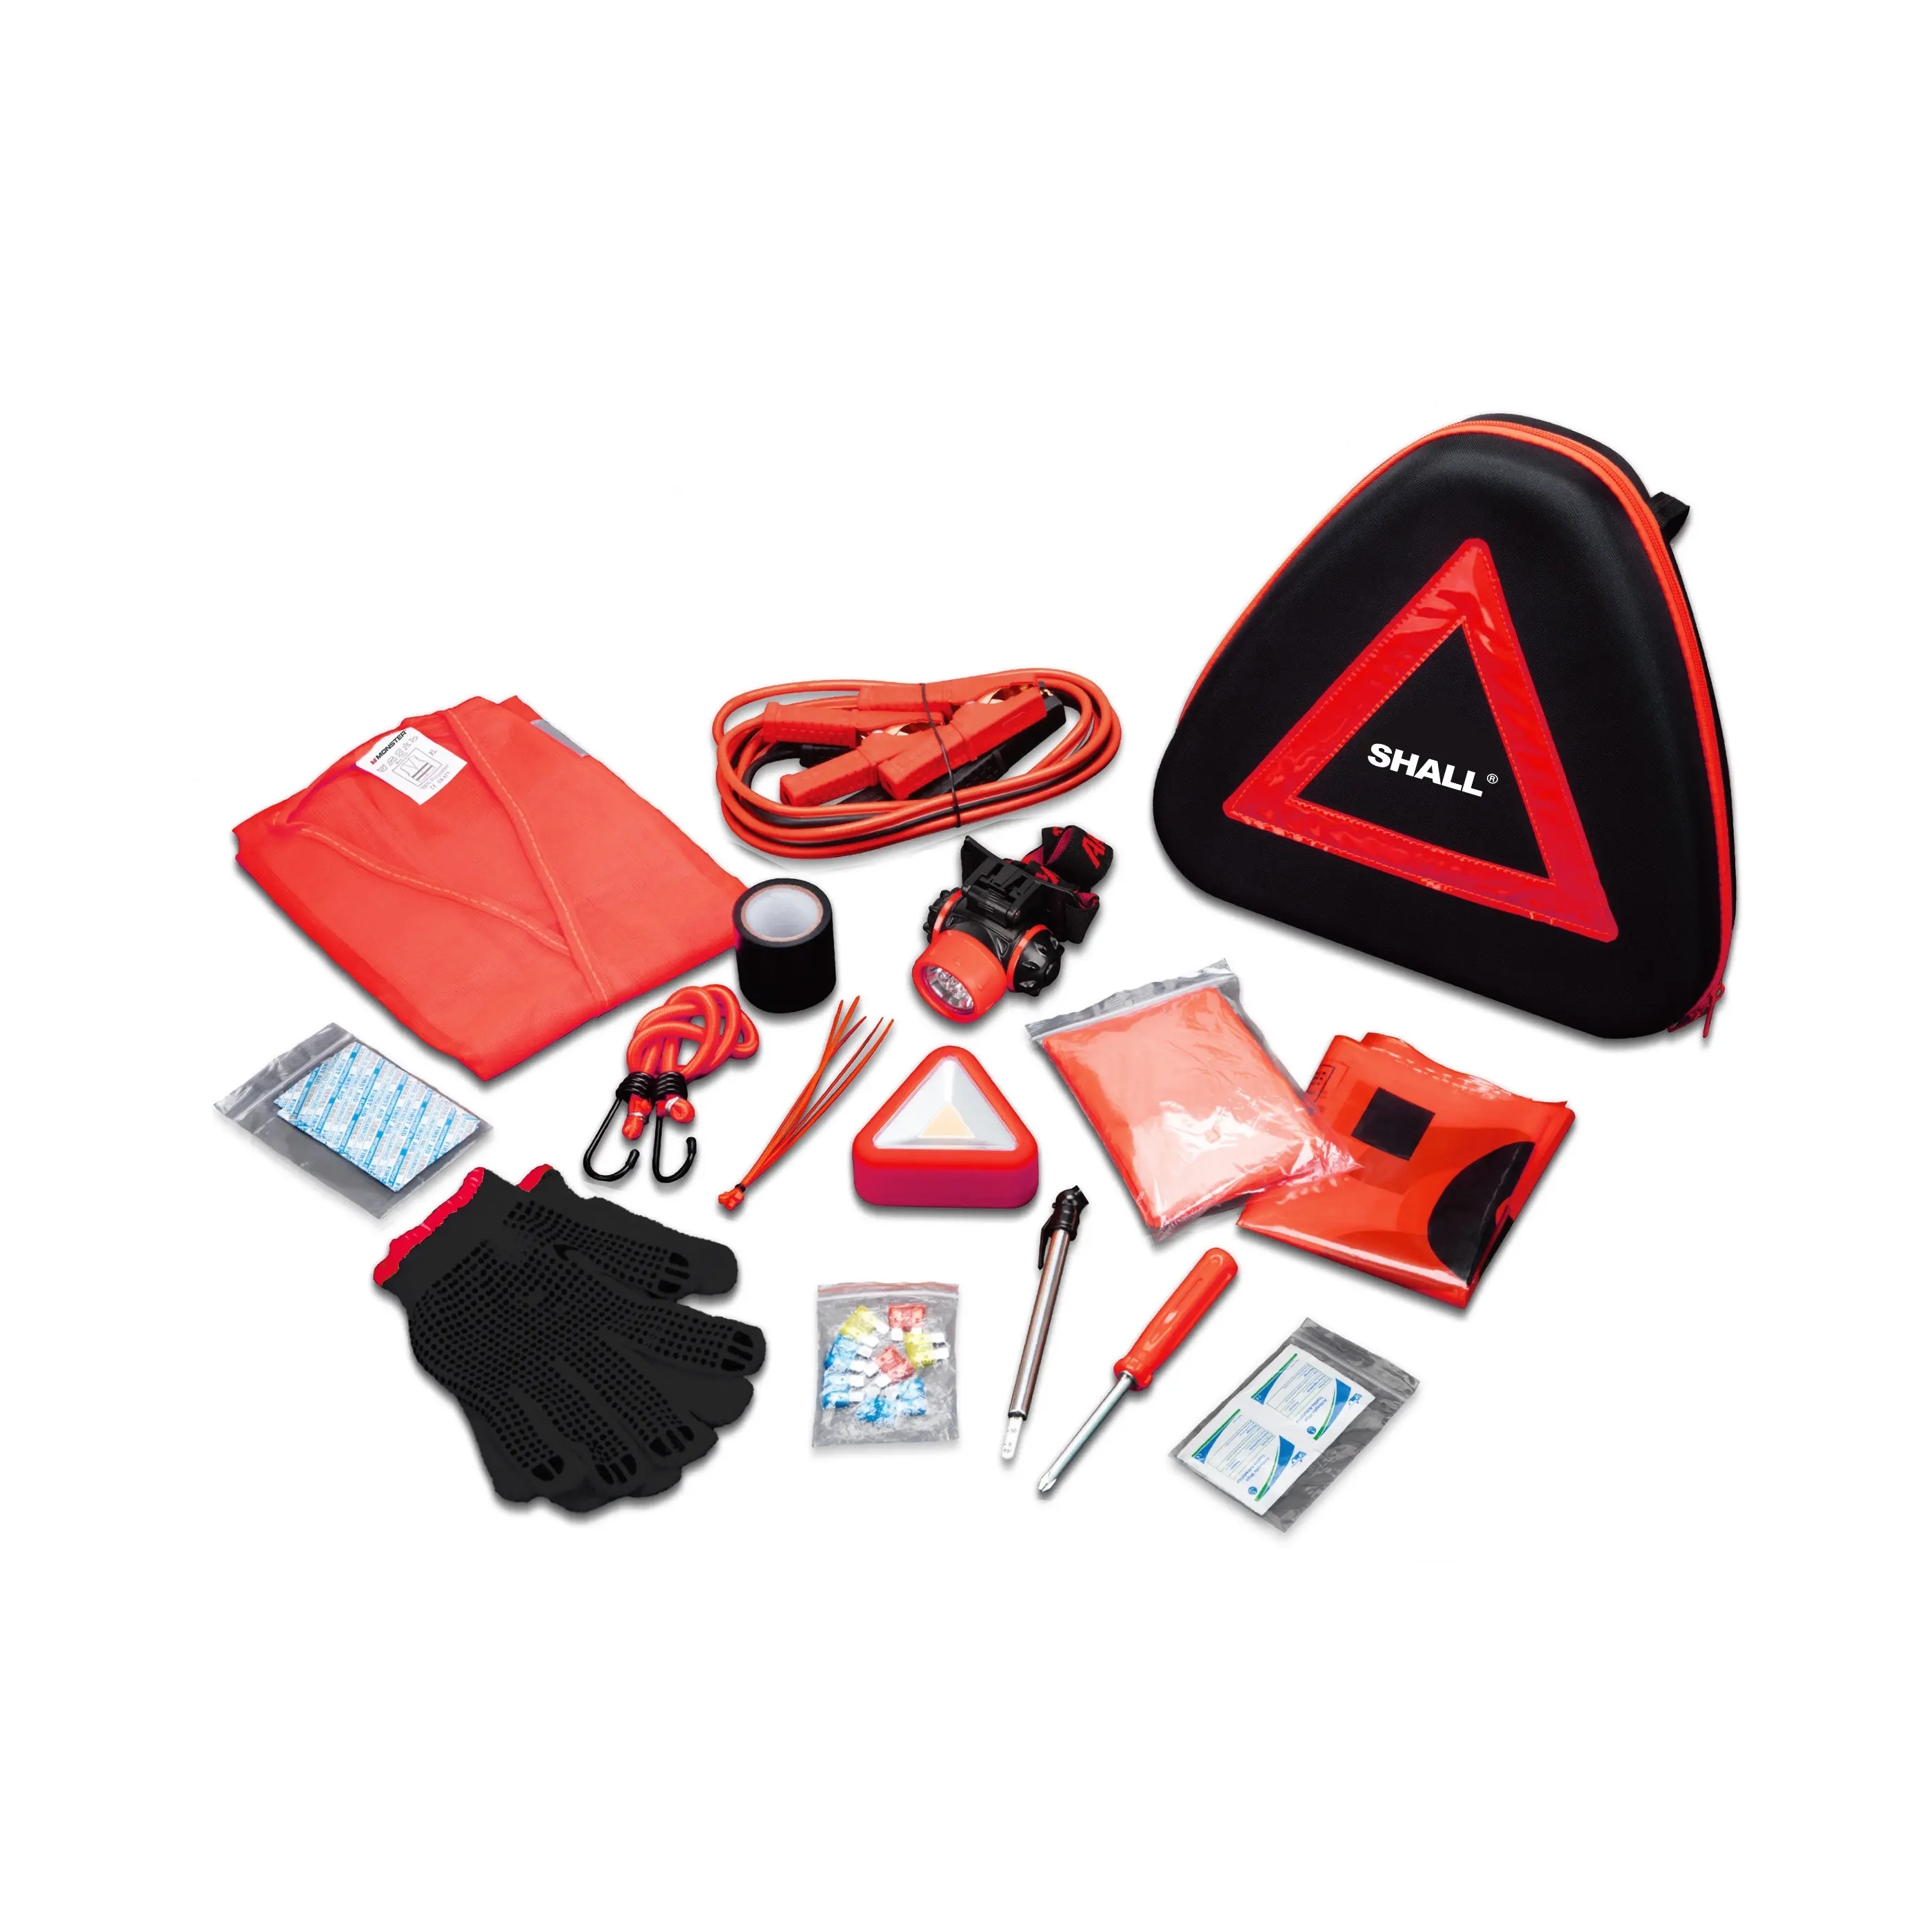 Kit de alarme de emergência para carros, colete reflexivo triangular com ferramentas para trânsito rodoviário, kit de luvas e chaves de fenda, kit de primeiros socorros barato, 45 unidades